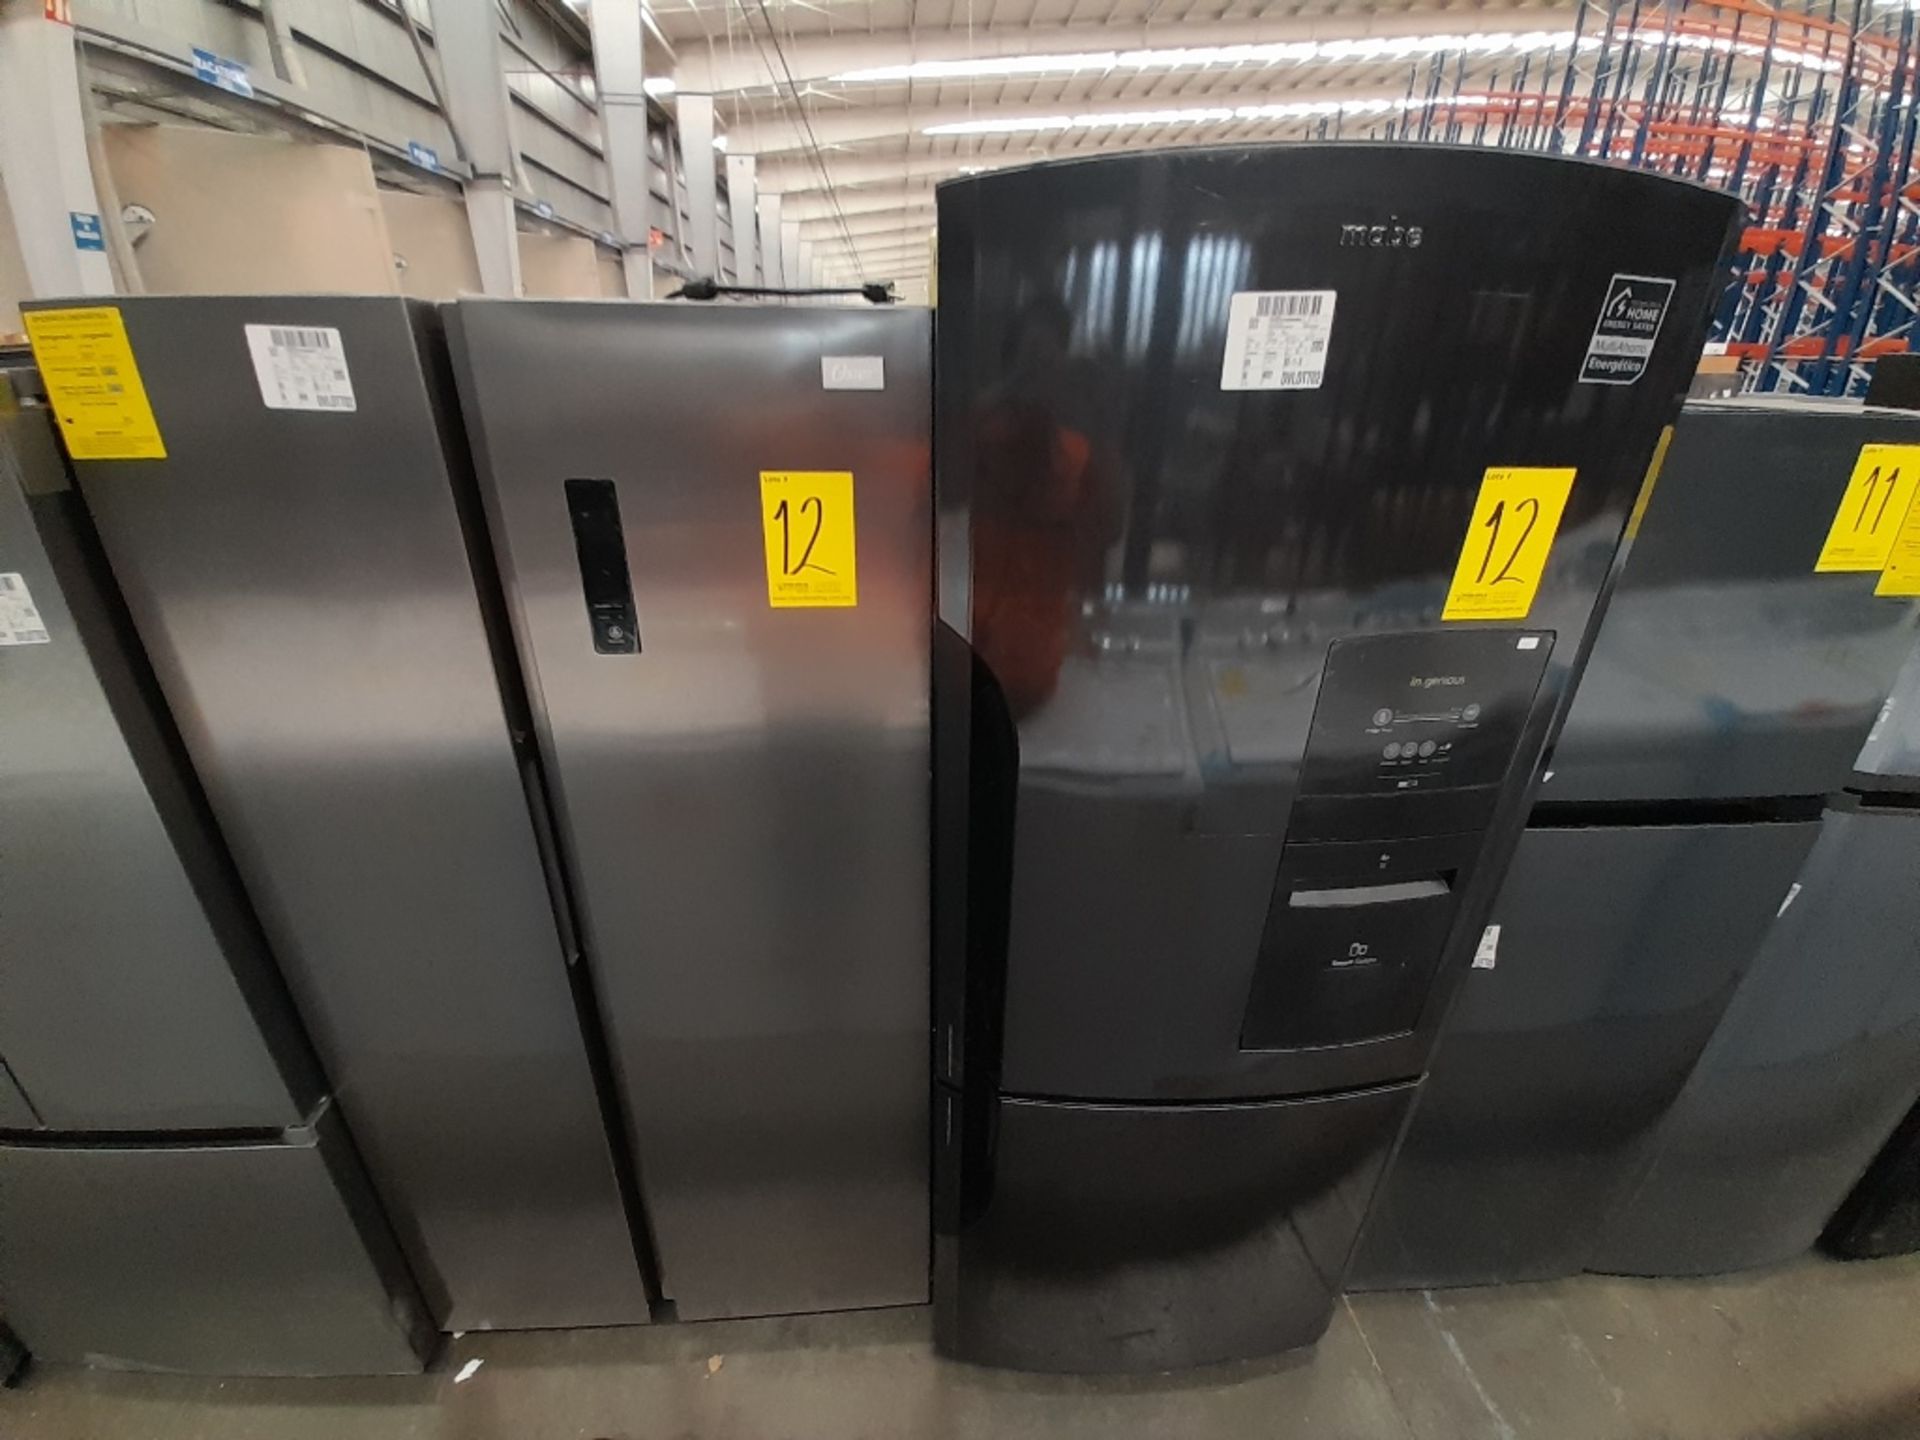 Lote de 2 refrigeradores contiene: 1 Refrigerador Marca MABE, Modelo IWMRP1, Serie ND, Color NEGRO;